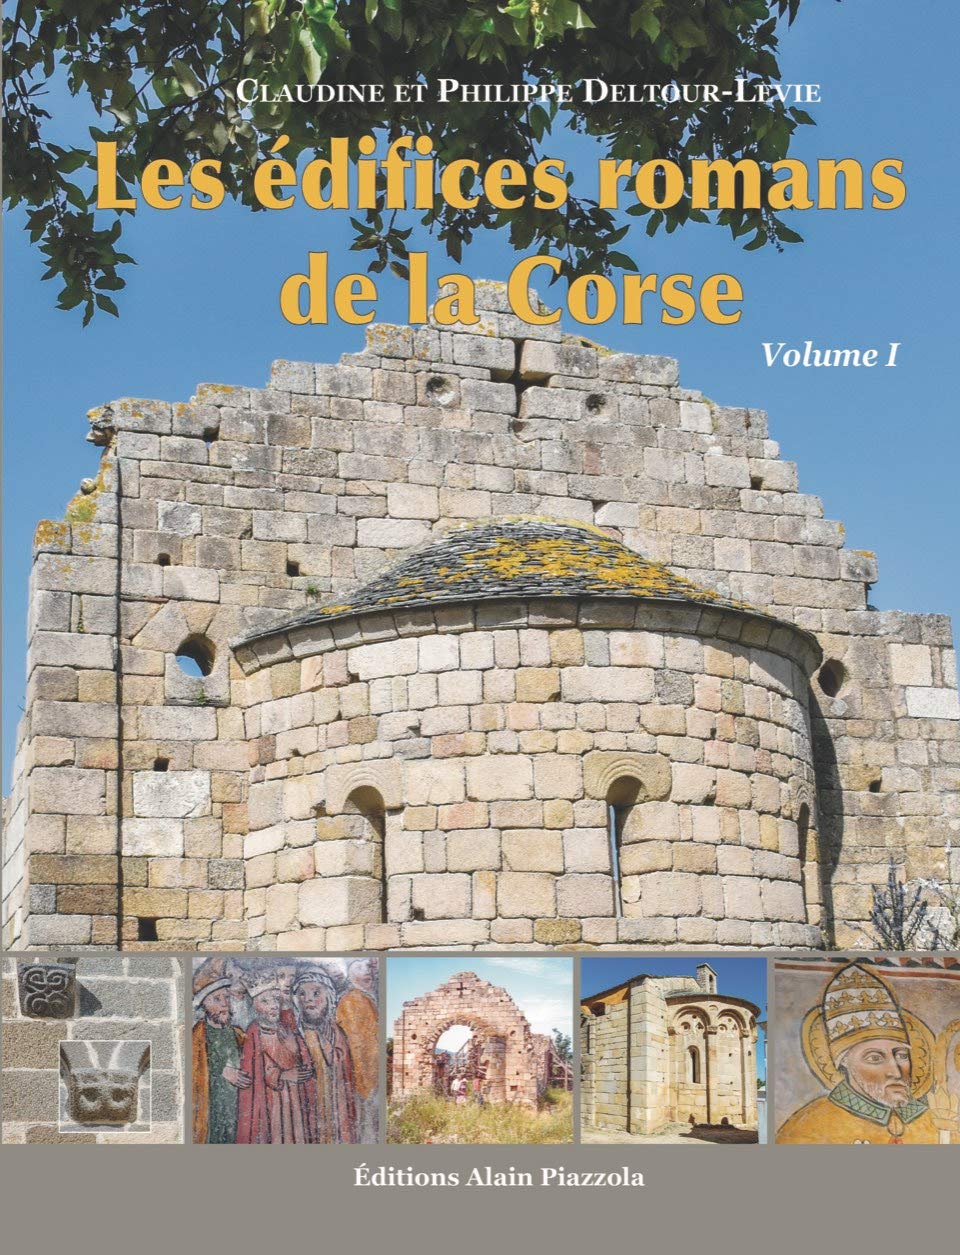 Les édifices romans de la Corse. Volume 1, 2020, 416 p.